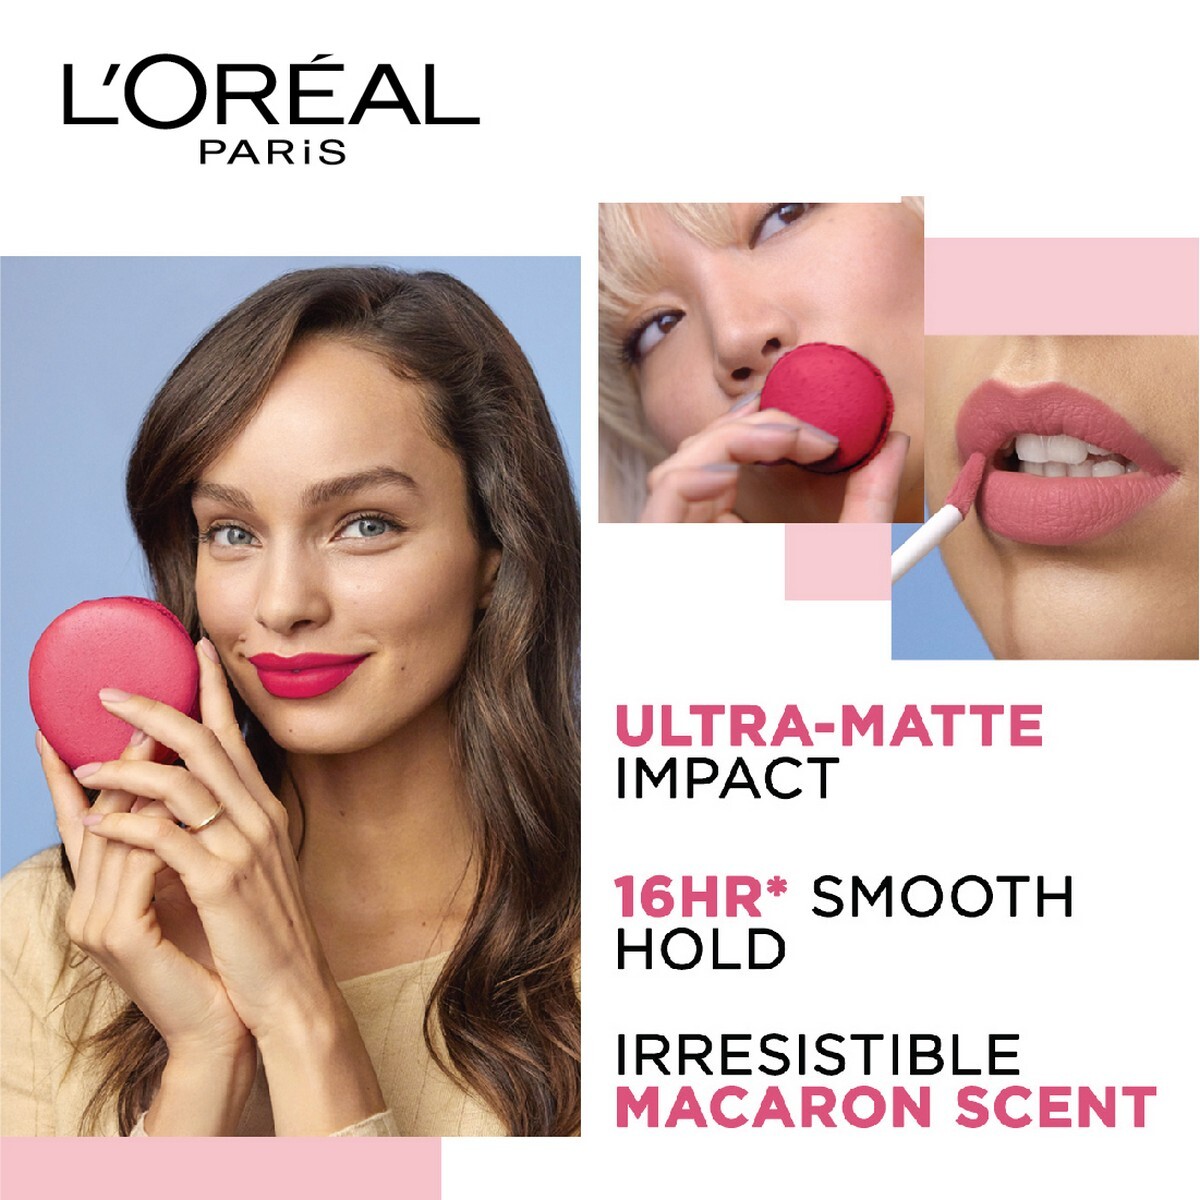 L'Or�al Paris Infallible Ultra Matte Liquid Lipstick, Les Macarons, 838 Berry Cherie, 5g